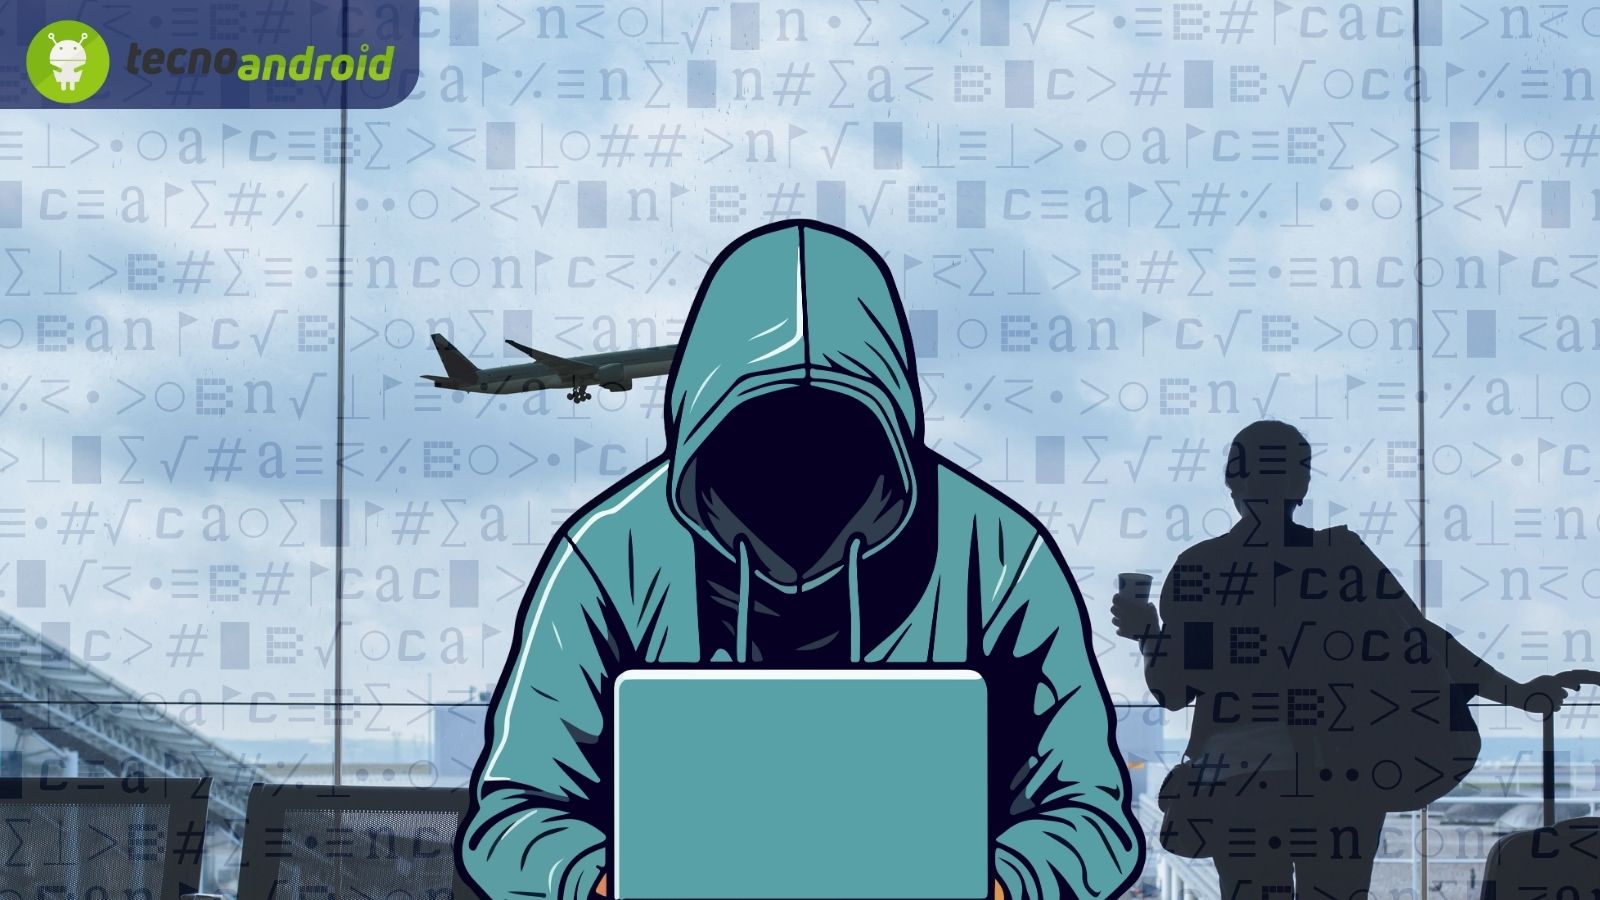 aeroporti italiani colpiti dagli hacker